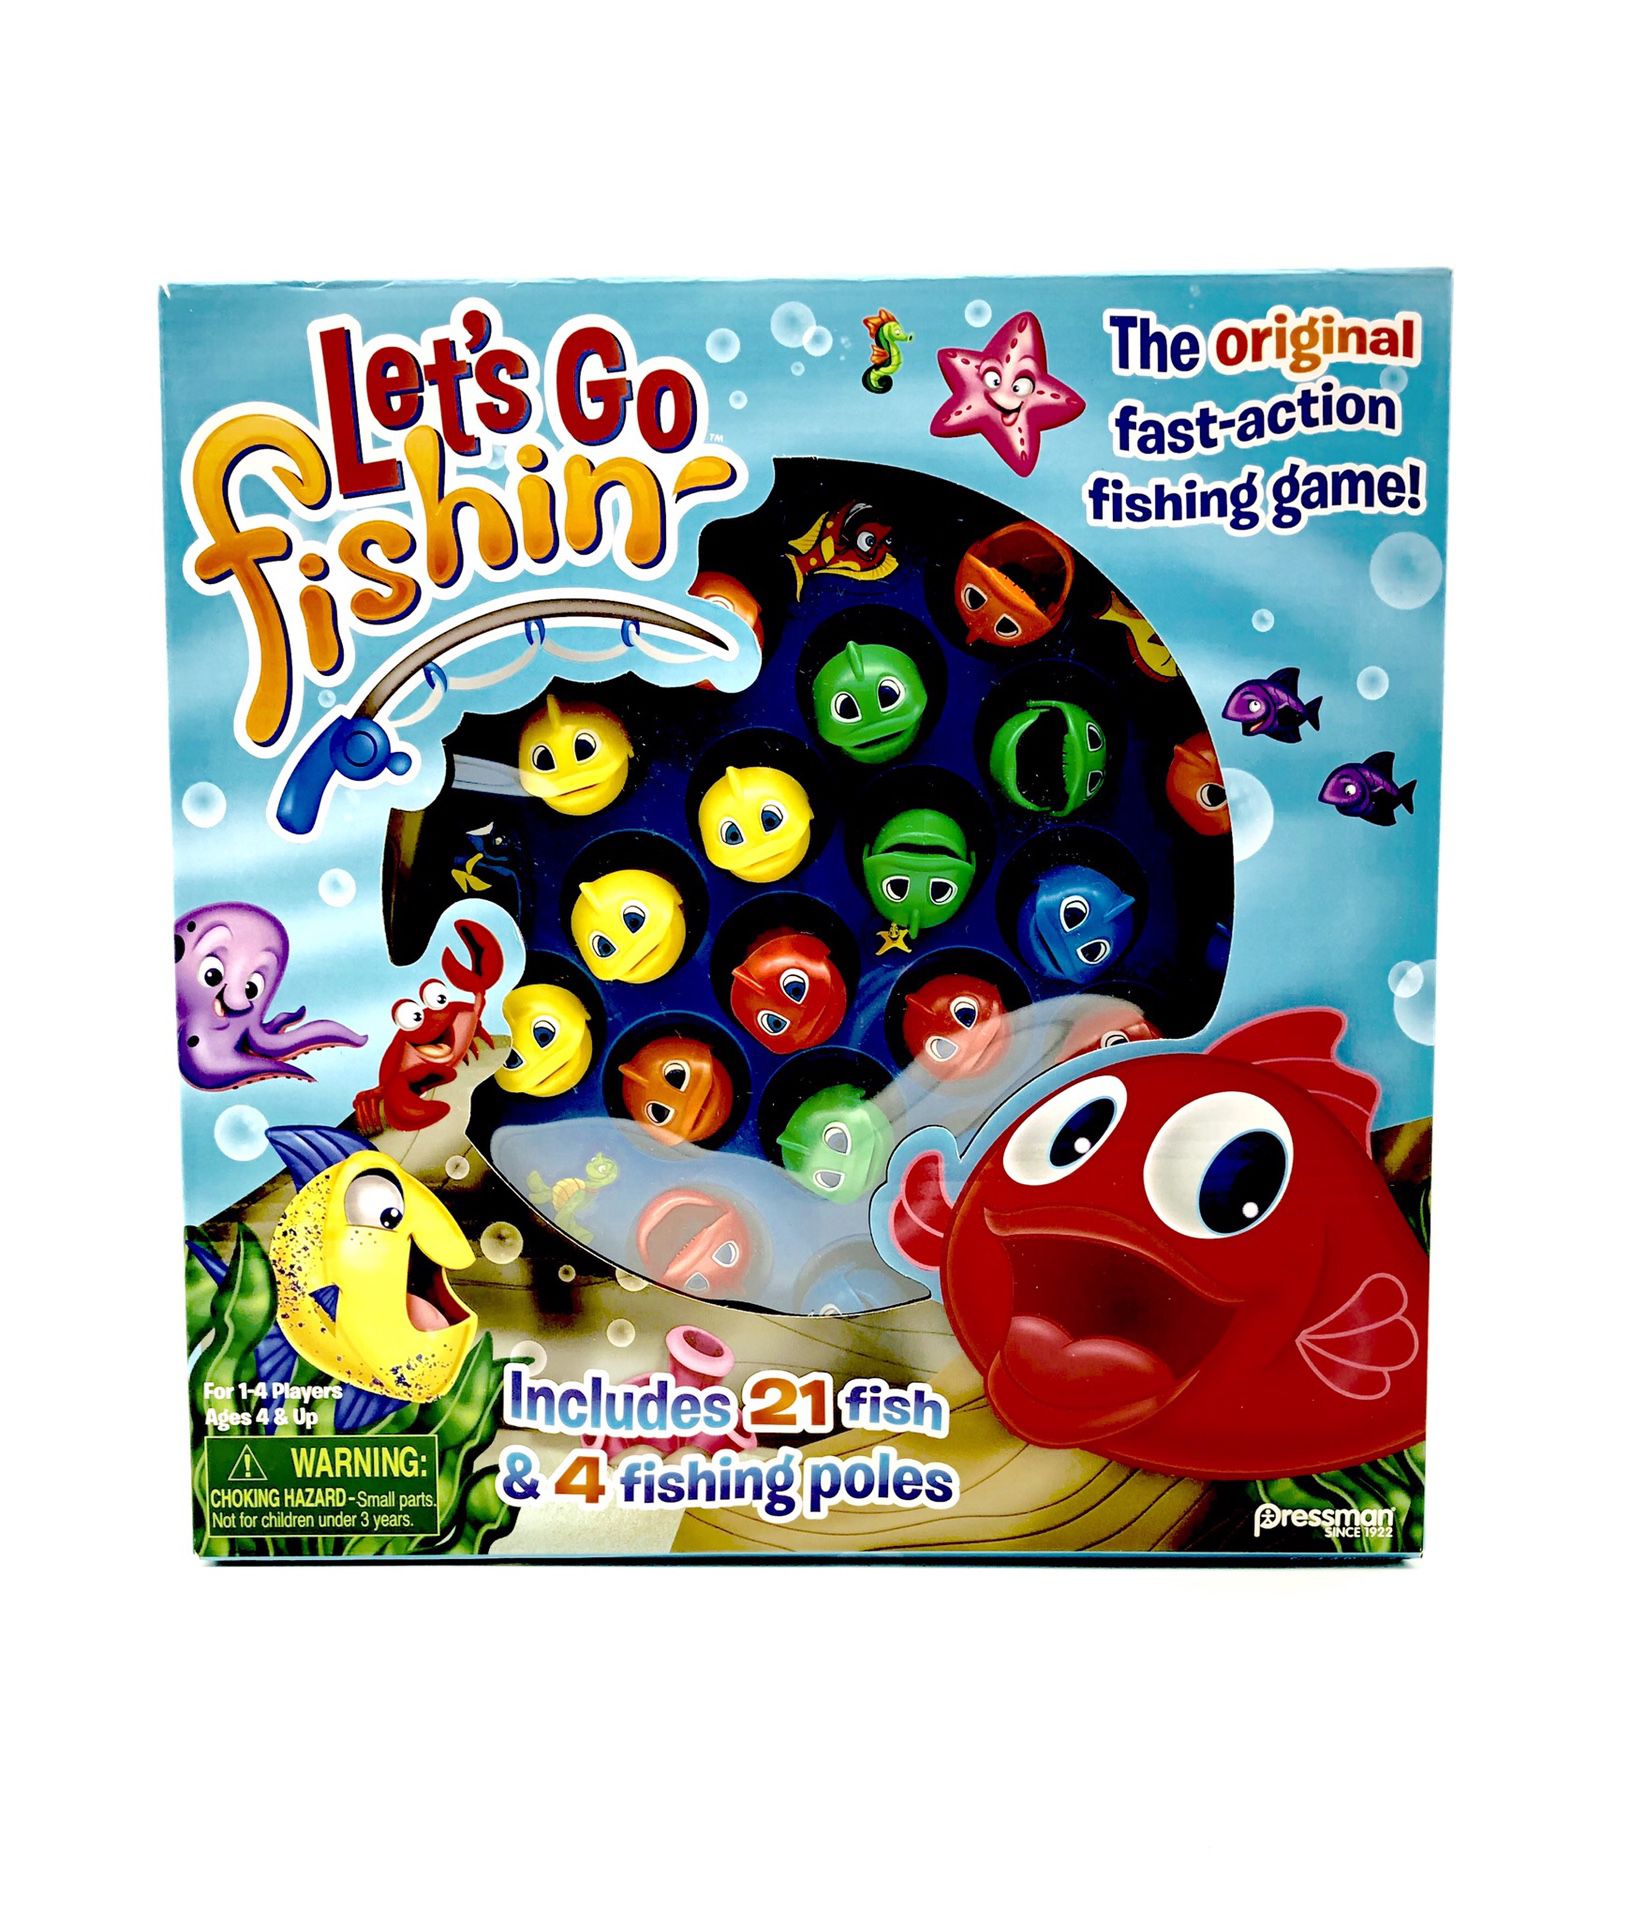 Let’s go fishin fishing kids toys family toy Christmas toys fun time